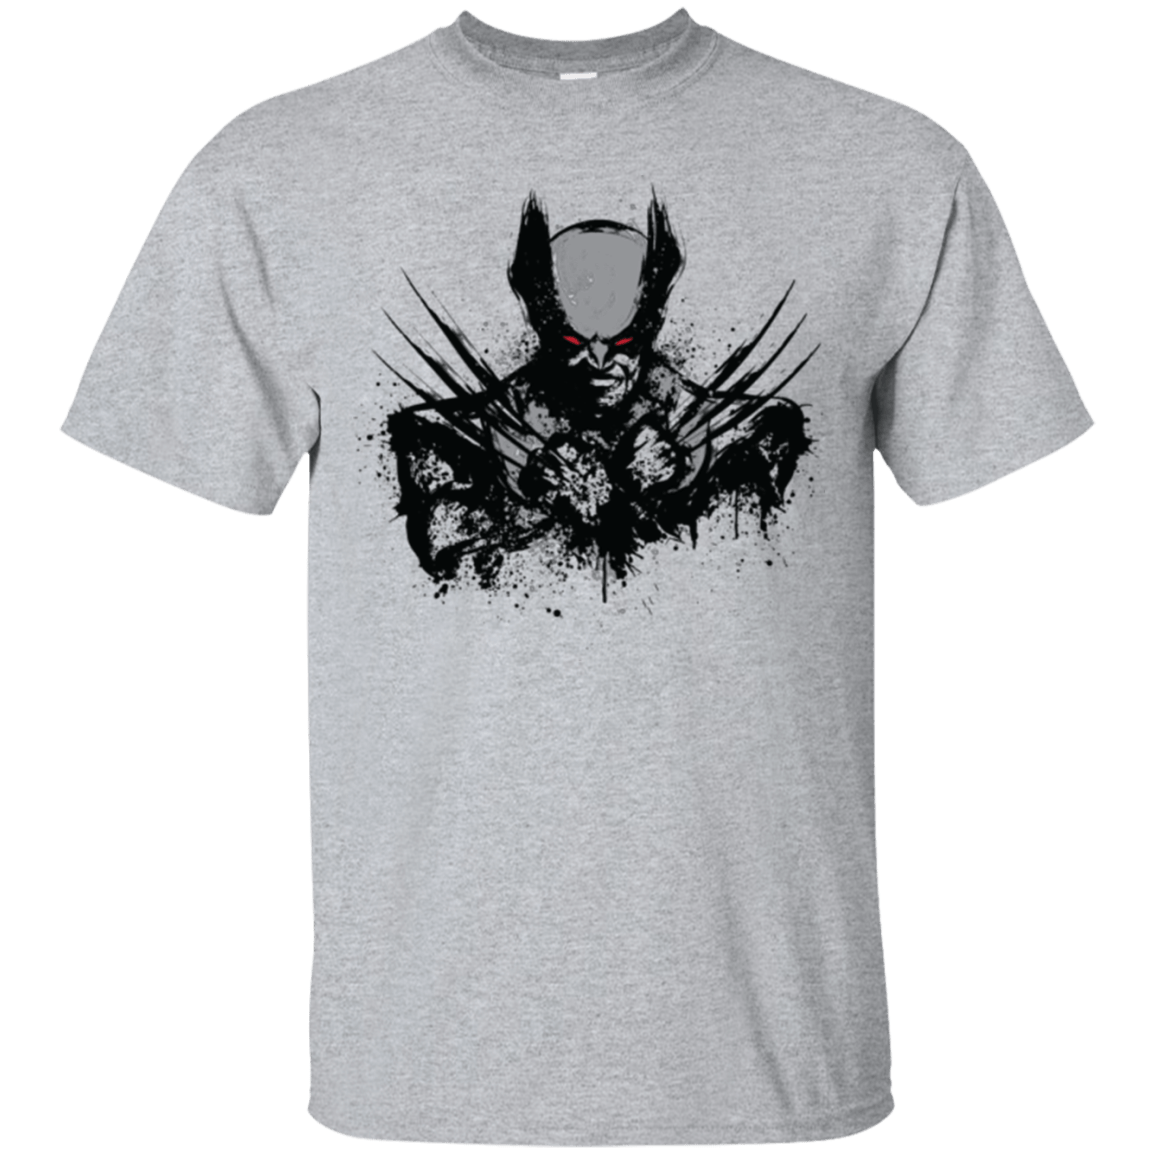 T-Shirts Sport Grey / Small Mutant Rage  X T-Shirt